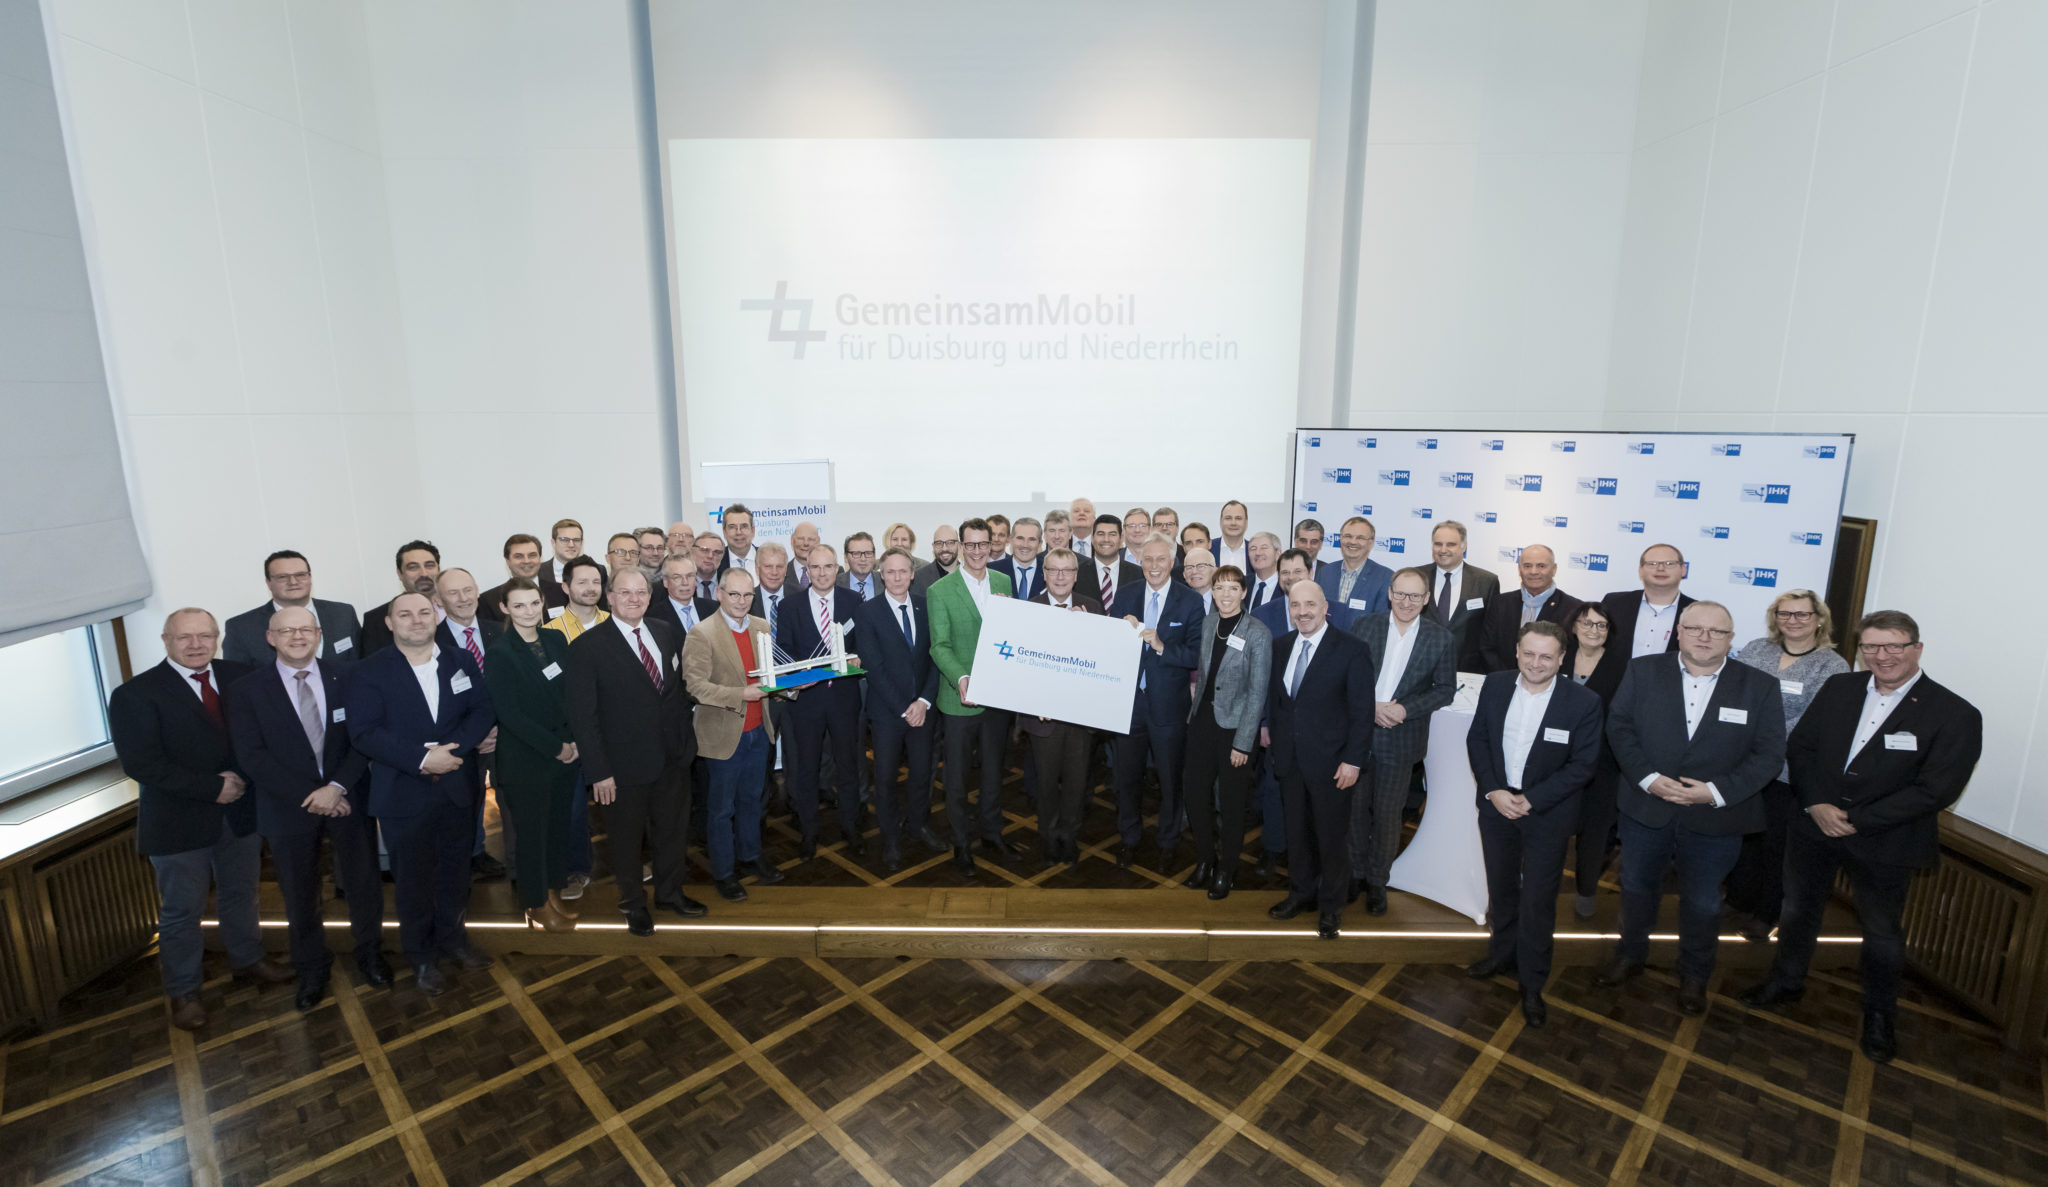 Viele Unternehmerinnen und Unternehmer vom Niederrhein unterstützen das Bündnis für Moblität #GemeinsamMobil.